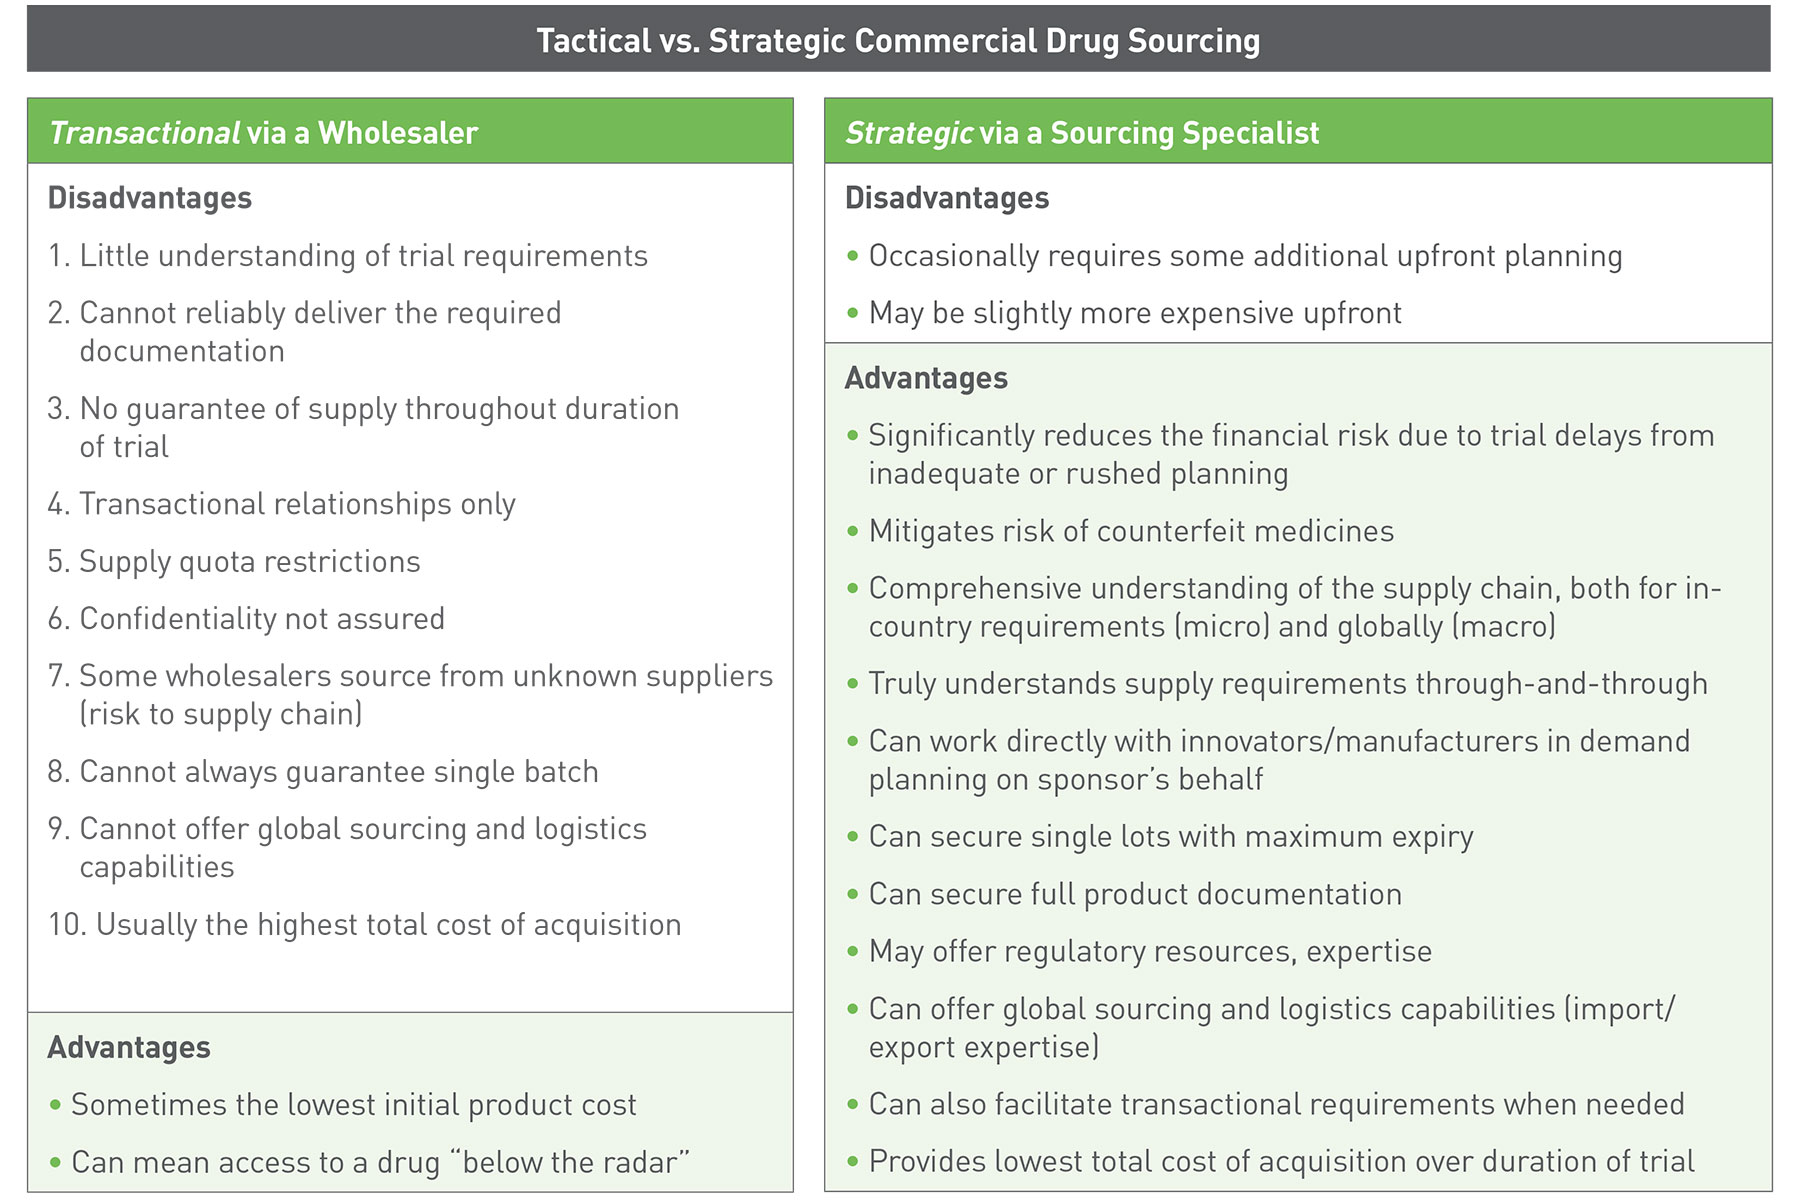 Tactical vs Strategic Commercial Drug Sourcing